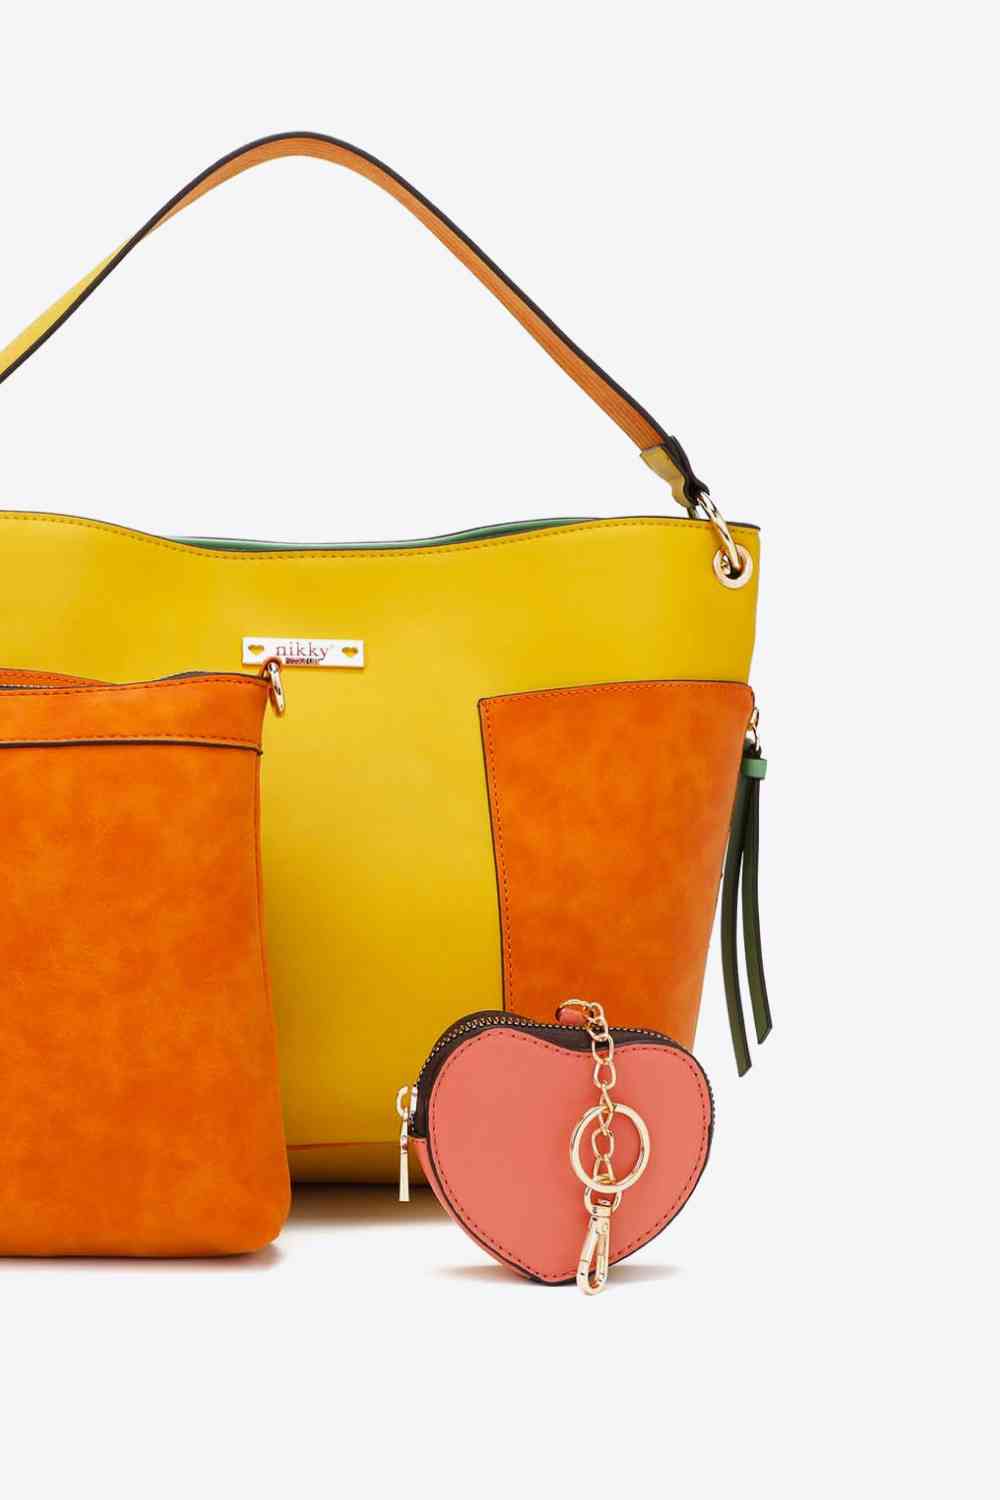 Nicole Lee USA Sweetheart Handbag Set - Three Bears Boutique